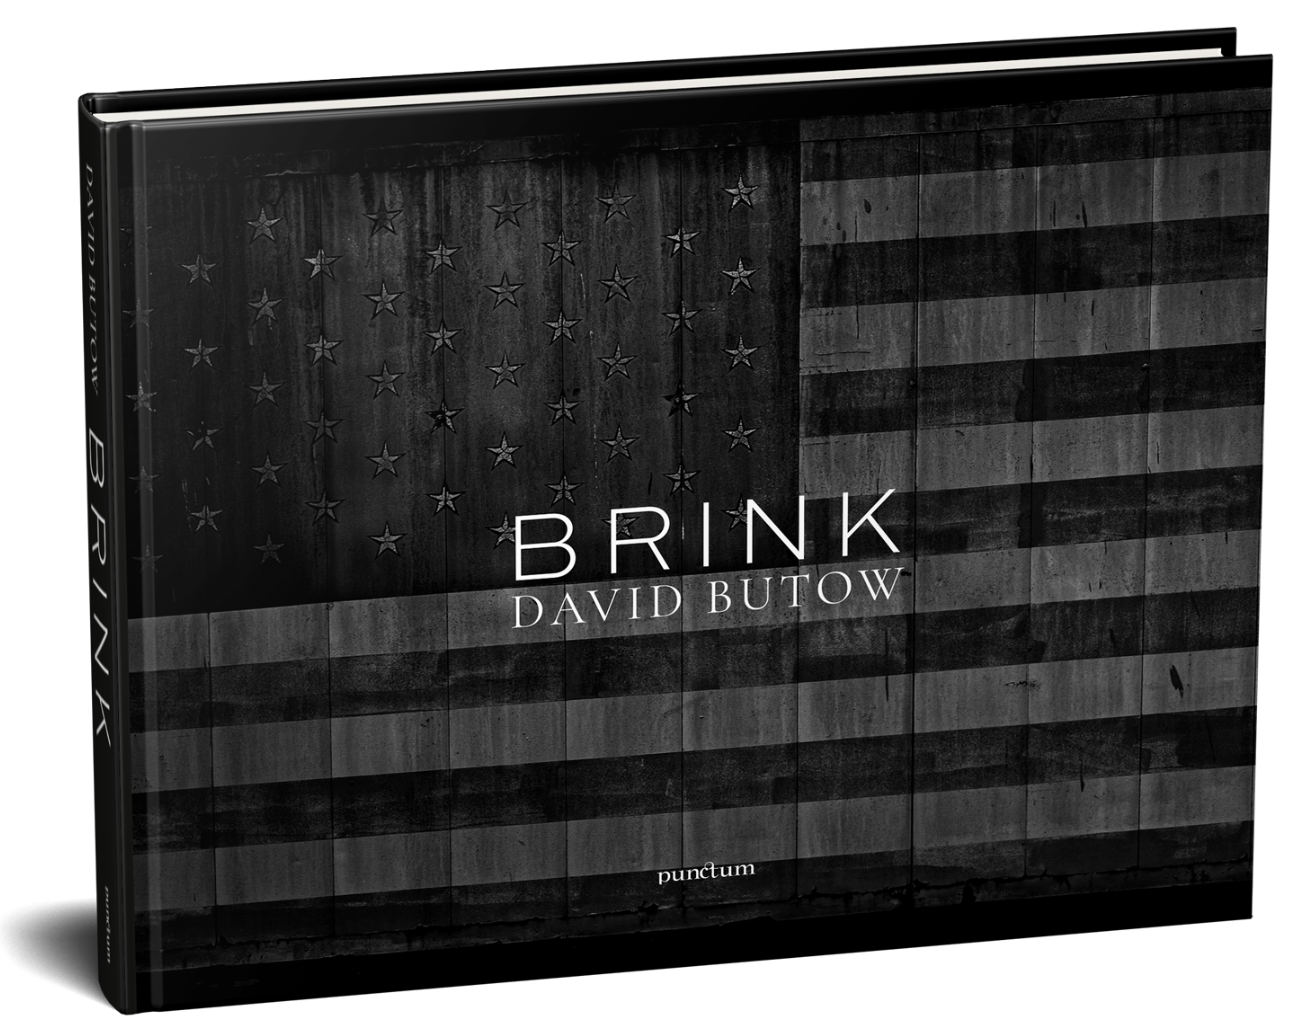 BRINK, de David Butow, é publicado pela Punctum Books.  A foto da capa é um tratamento em preto e branco de uma bandeira pintada na lateral de um celeiro.